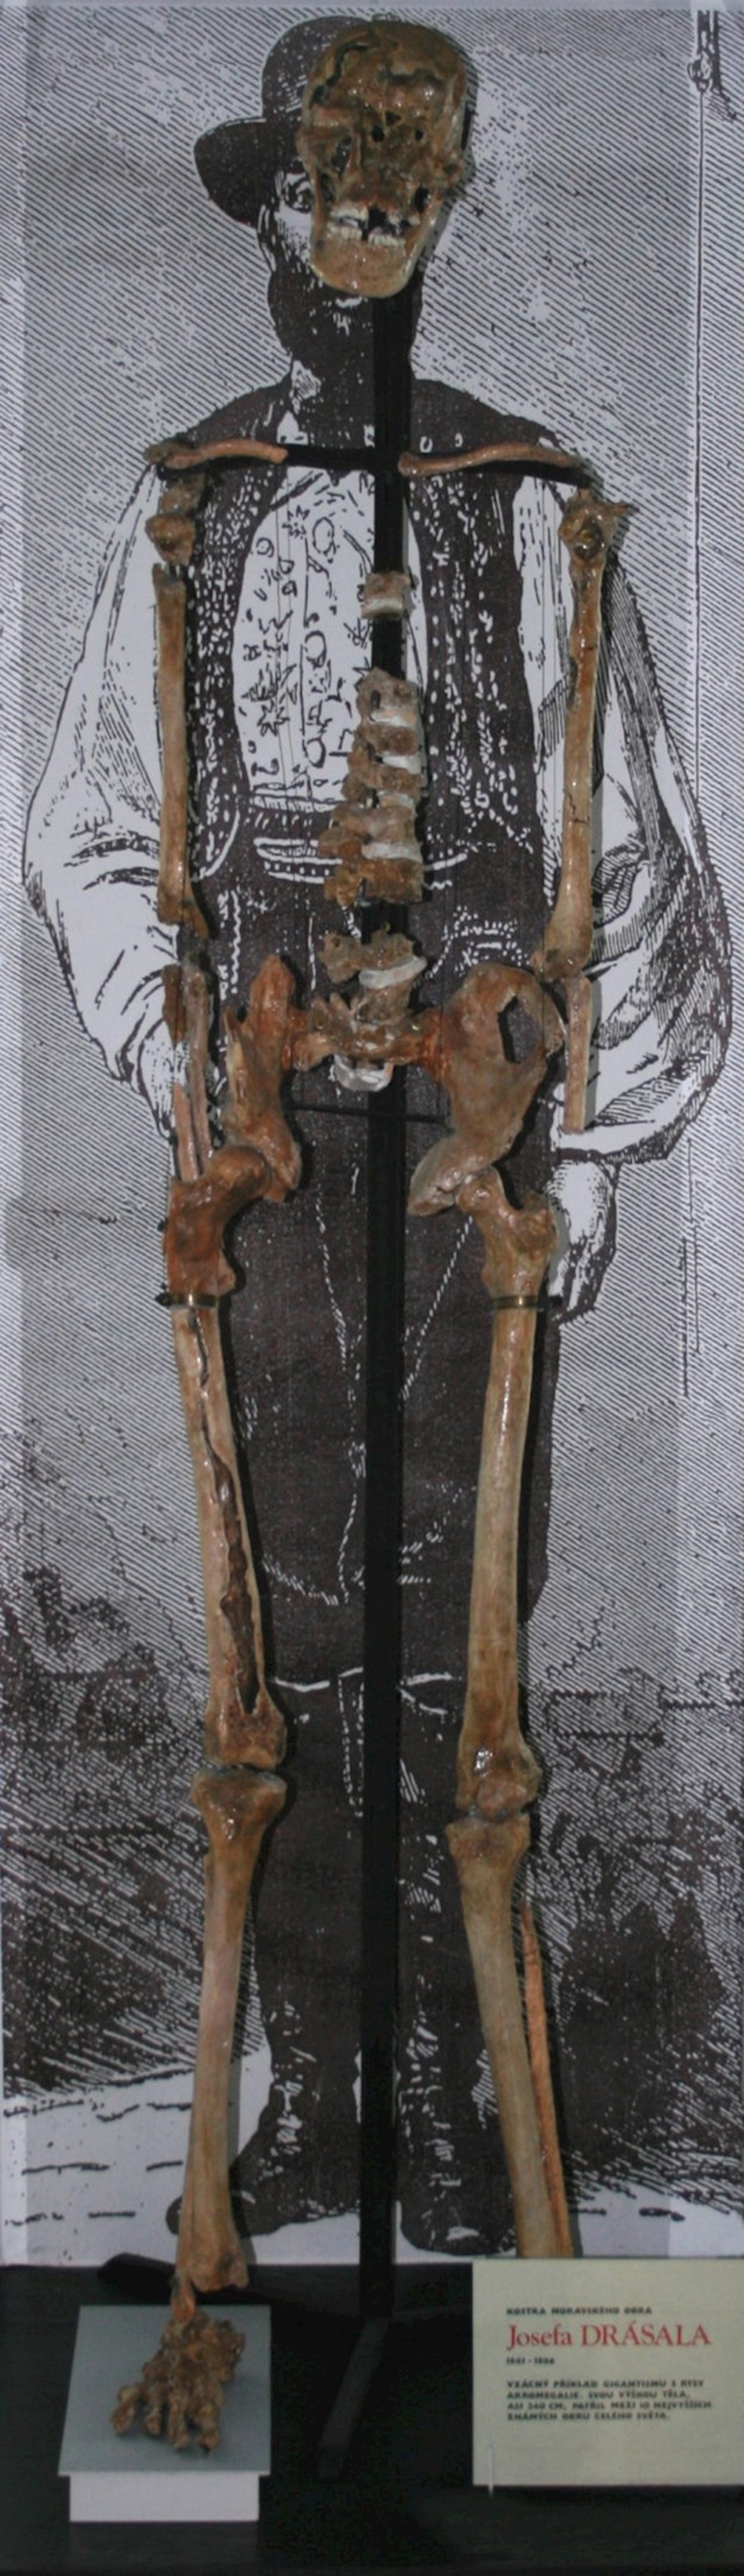 Kopie kostry moravského obra Josefa Drásala (výška 240 cm)